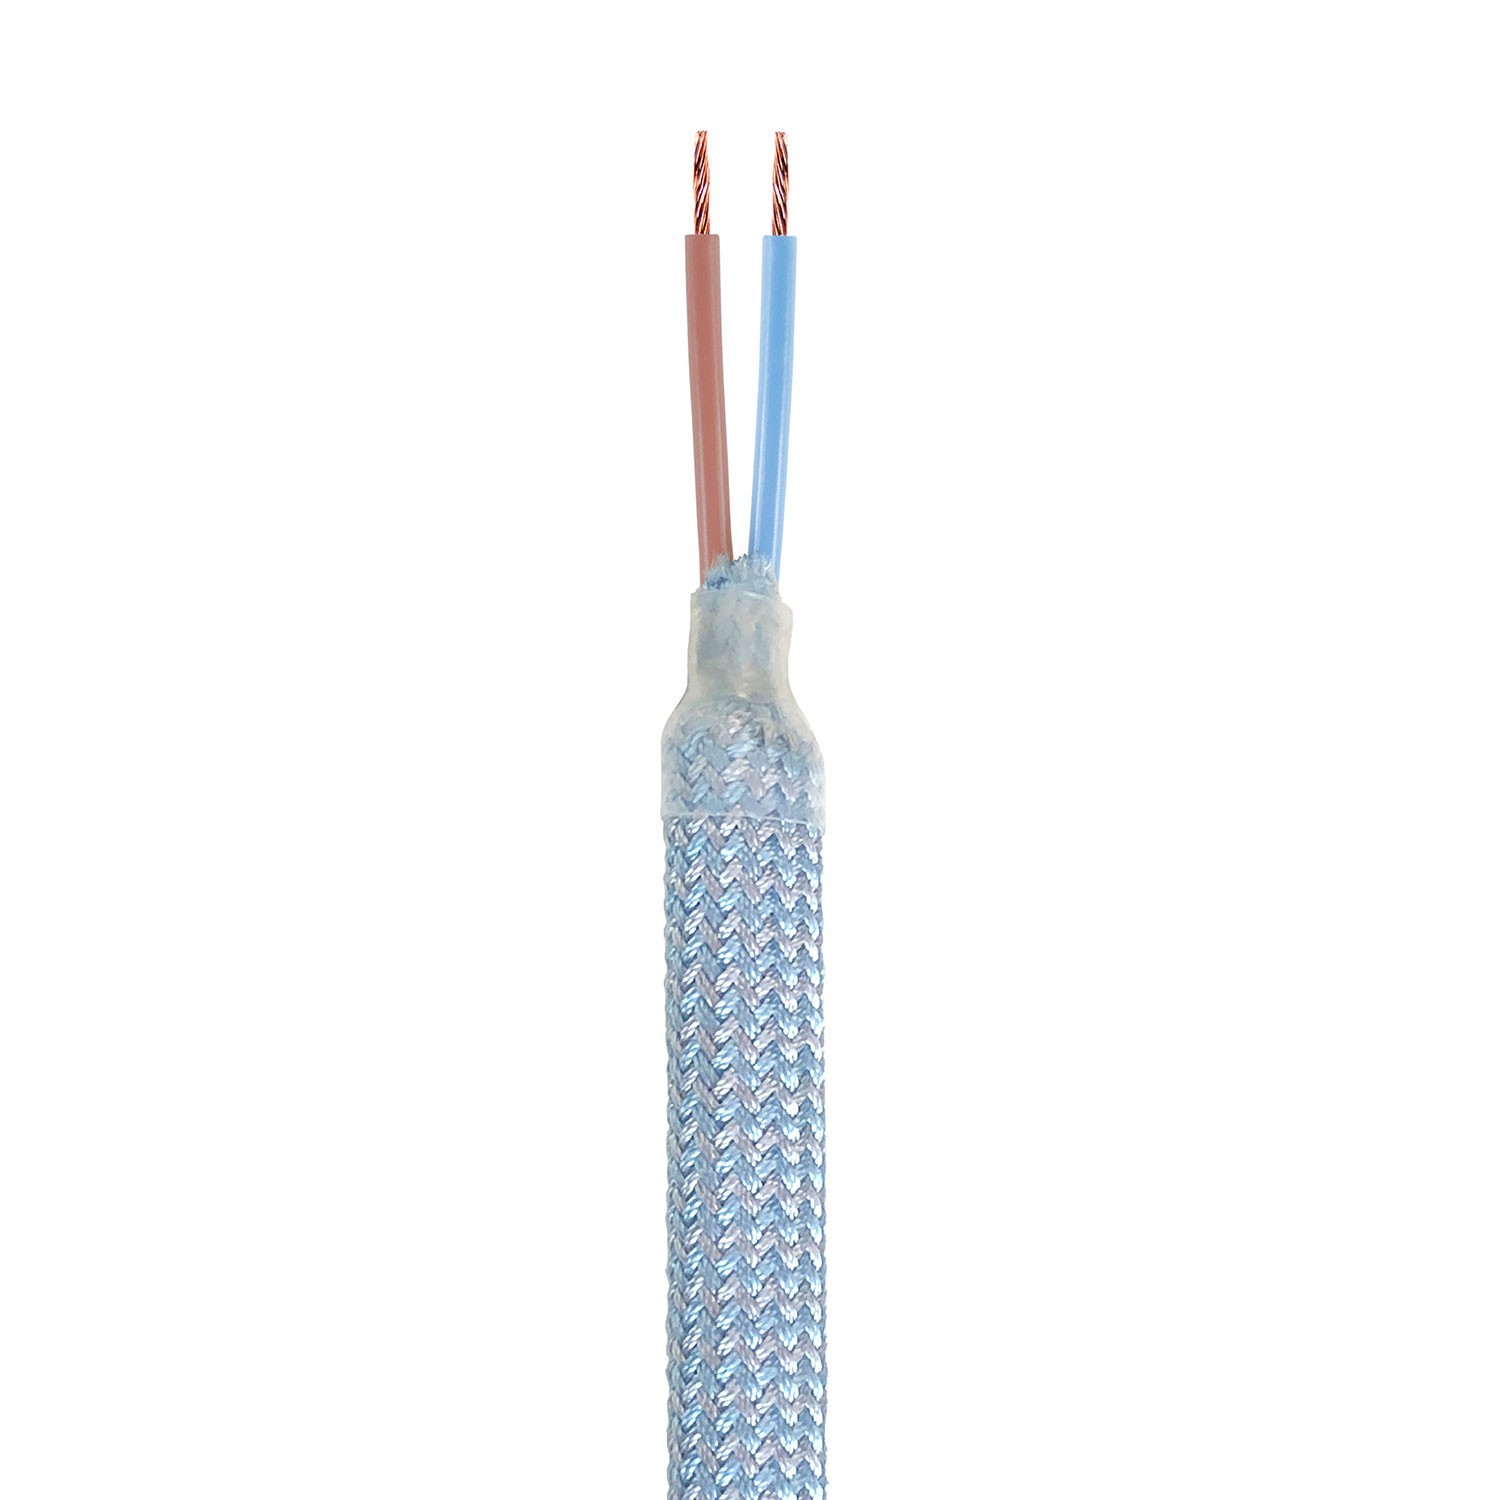 Kit Creative Flex: flexibele buis in babyblauw RM76 textielbekleding met metalen aansluitstukken